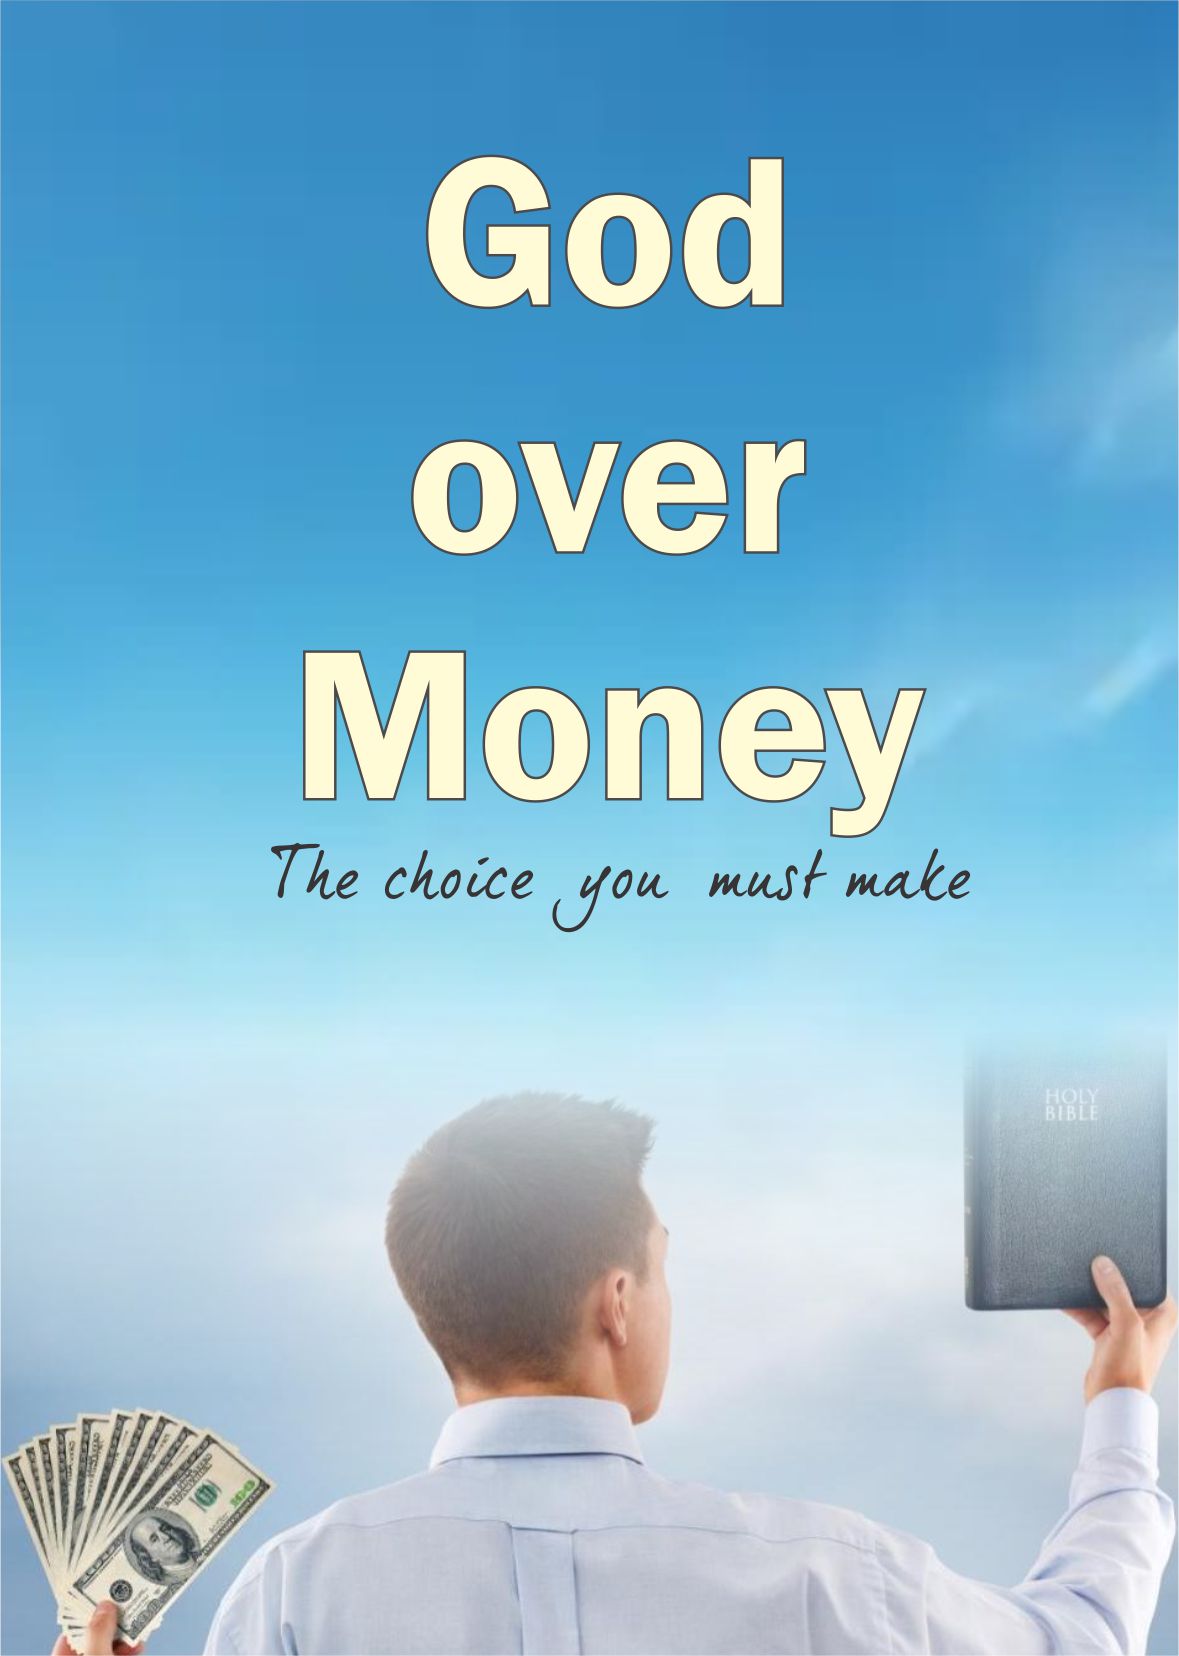 God over money